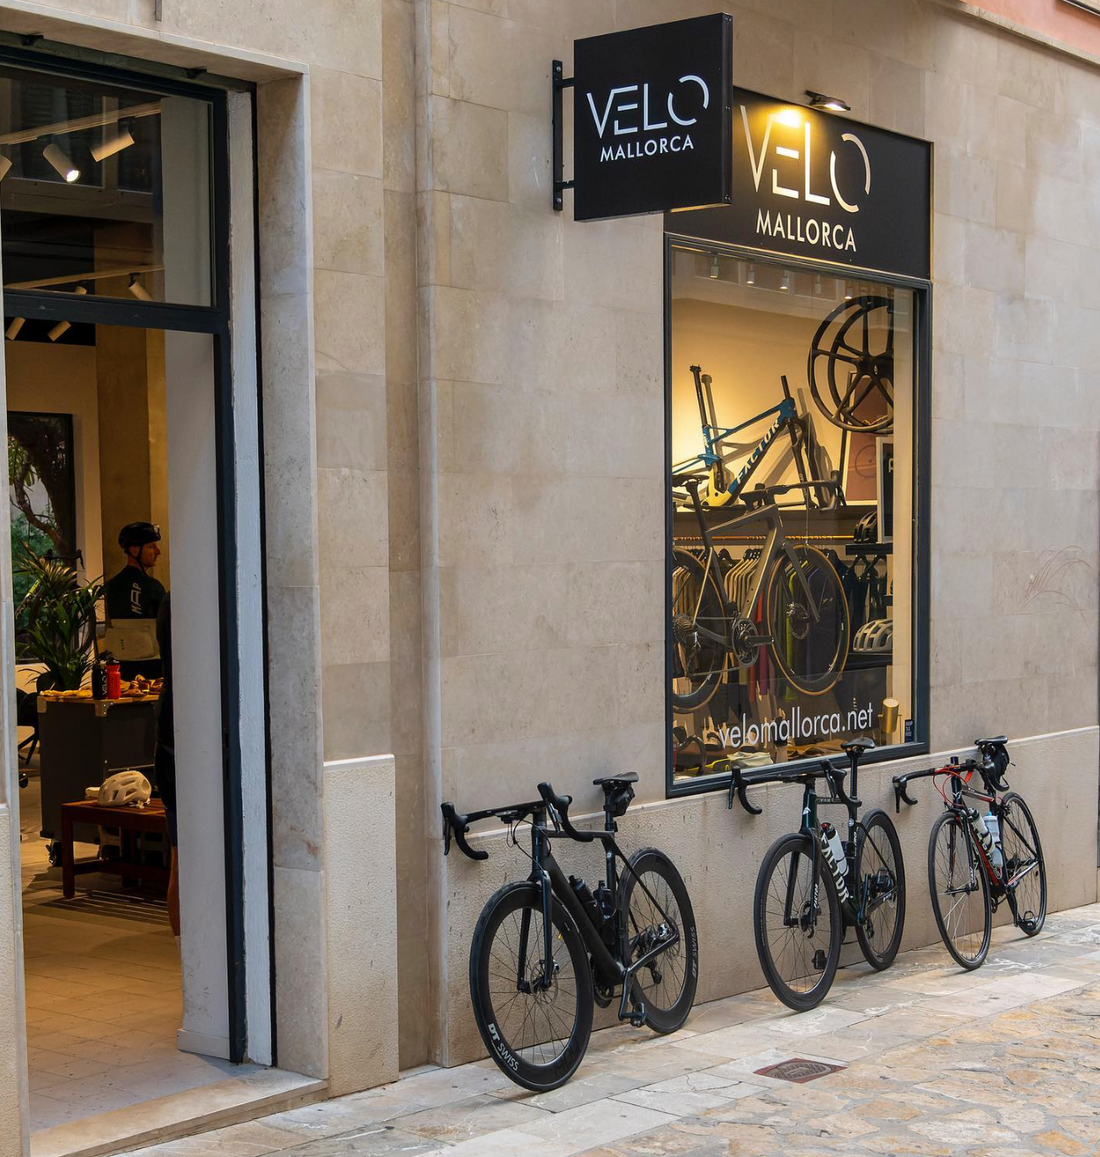 Las mejores tiendas de bicicletas que visitar en Mallorca